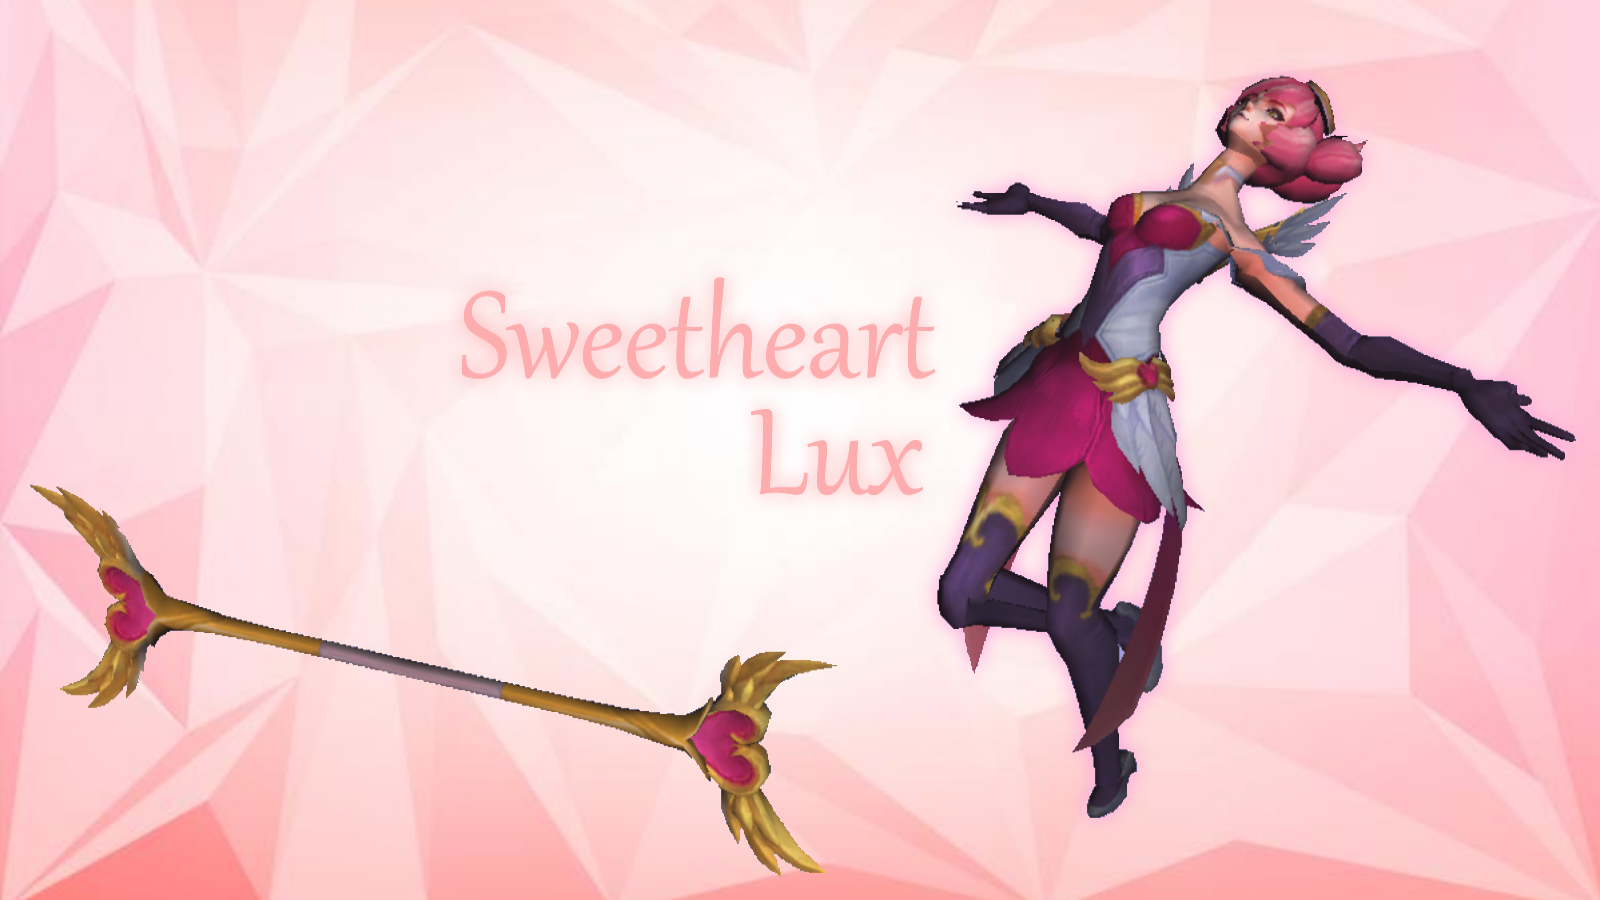 Sweetheart Lux